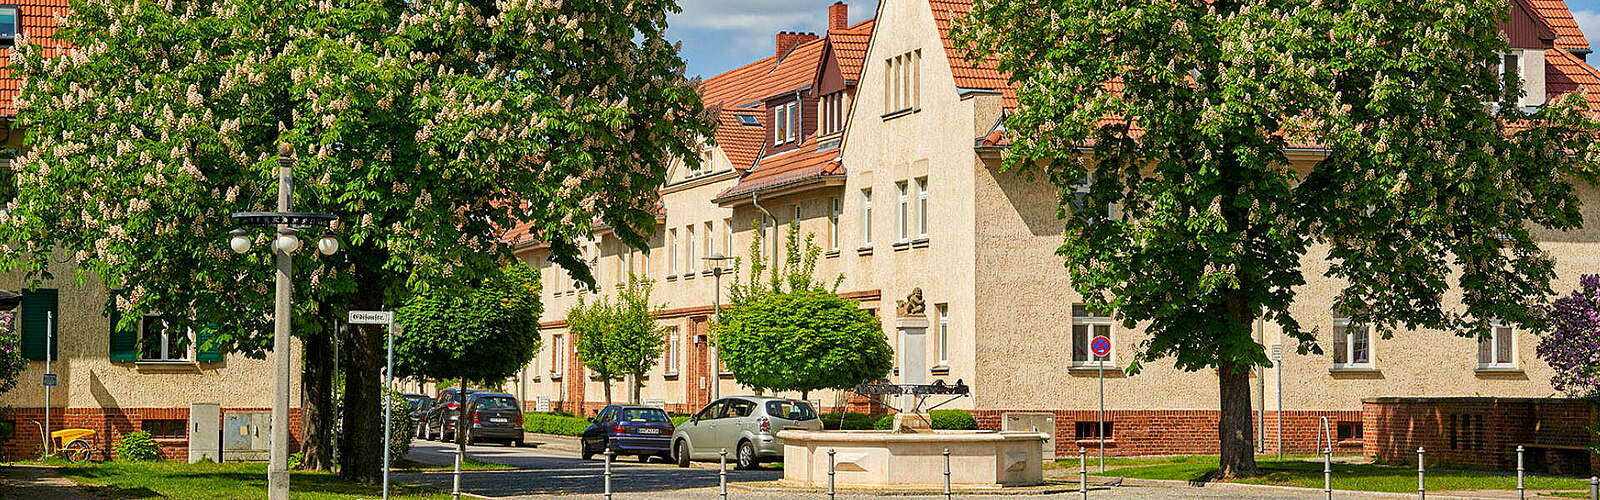 Edisonstraße in the Rathenau Quarter in Hennigsdorf,
        
    

        Picture: Stadt Hennigsdorf/Frank Liebke